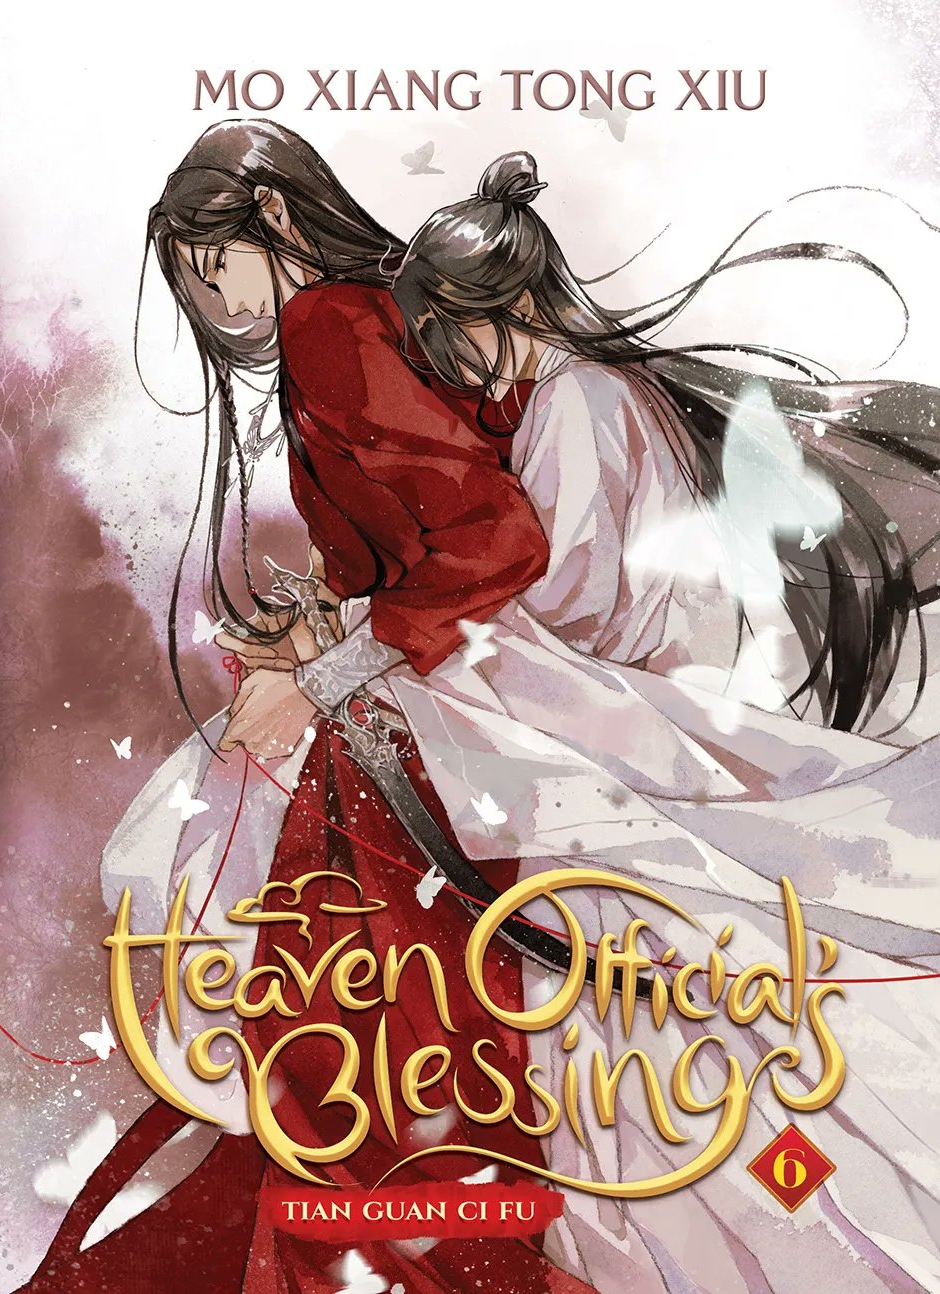 Heaven Official’s Blessing: Tian Guan Ci Fu (Novel) - Volume 6 | Mo Xiang Tong Xiu